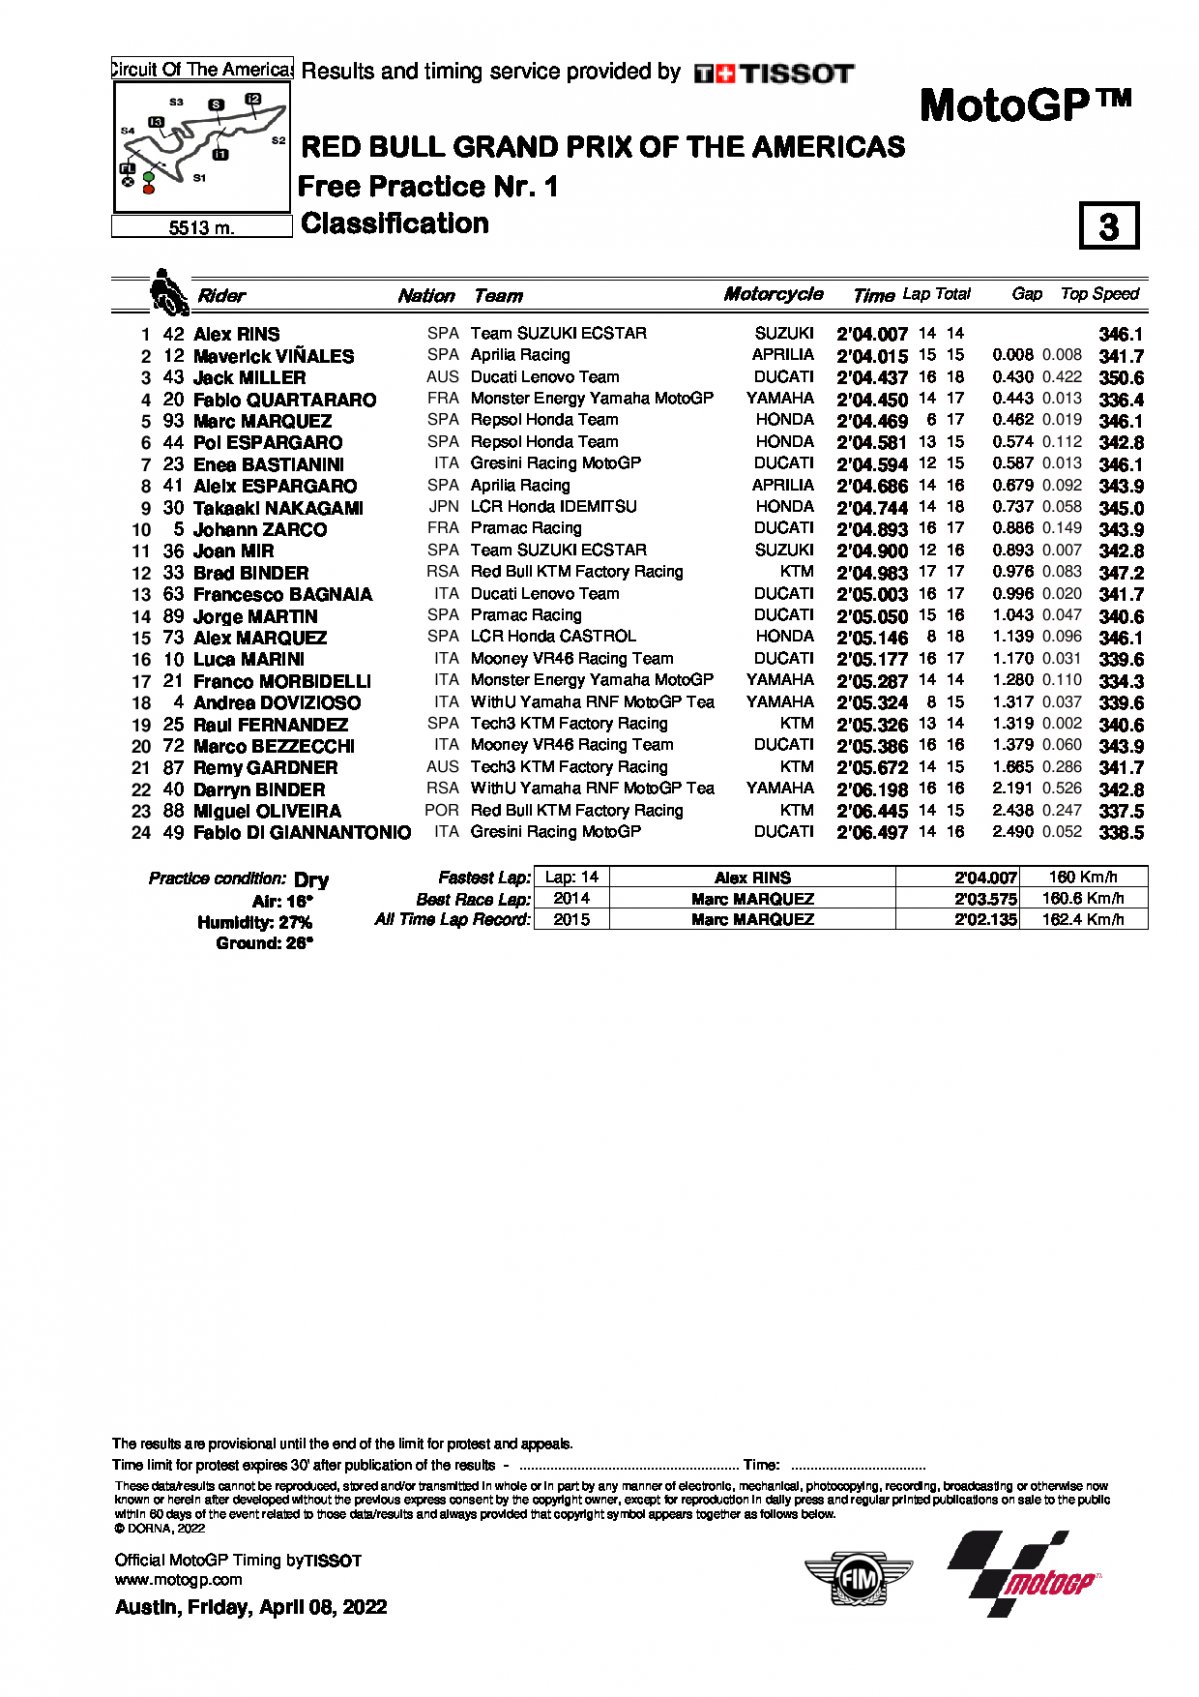 Результаты FP1 AmericasGP MotoGP (8/04/2022)